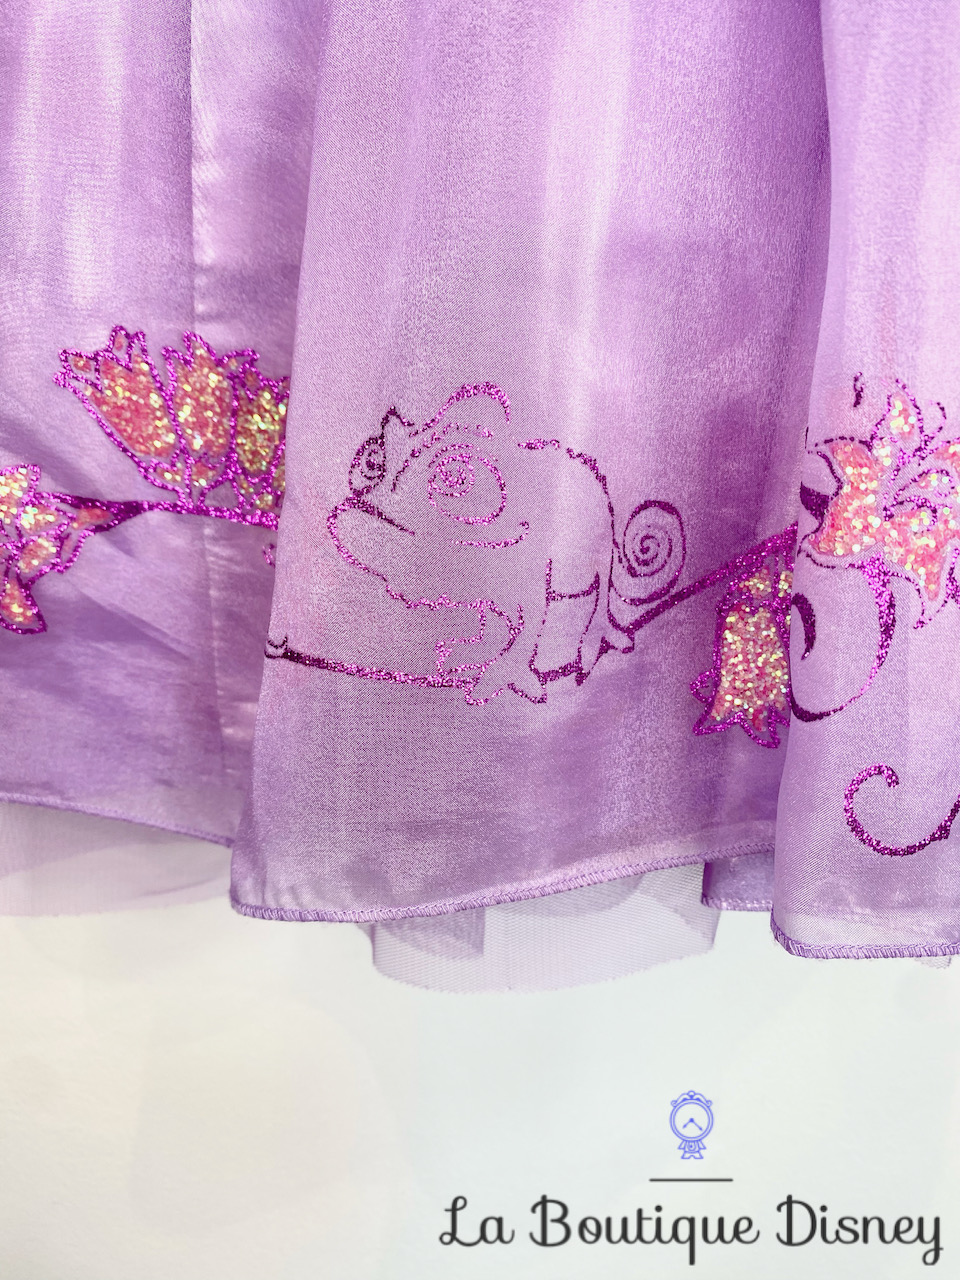 déguisement-raiponce-disney-store-taille-5-6-ans-robe-princesse-violet-paillettes-voile-rose-7